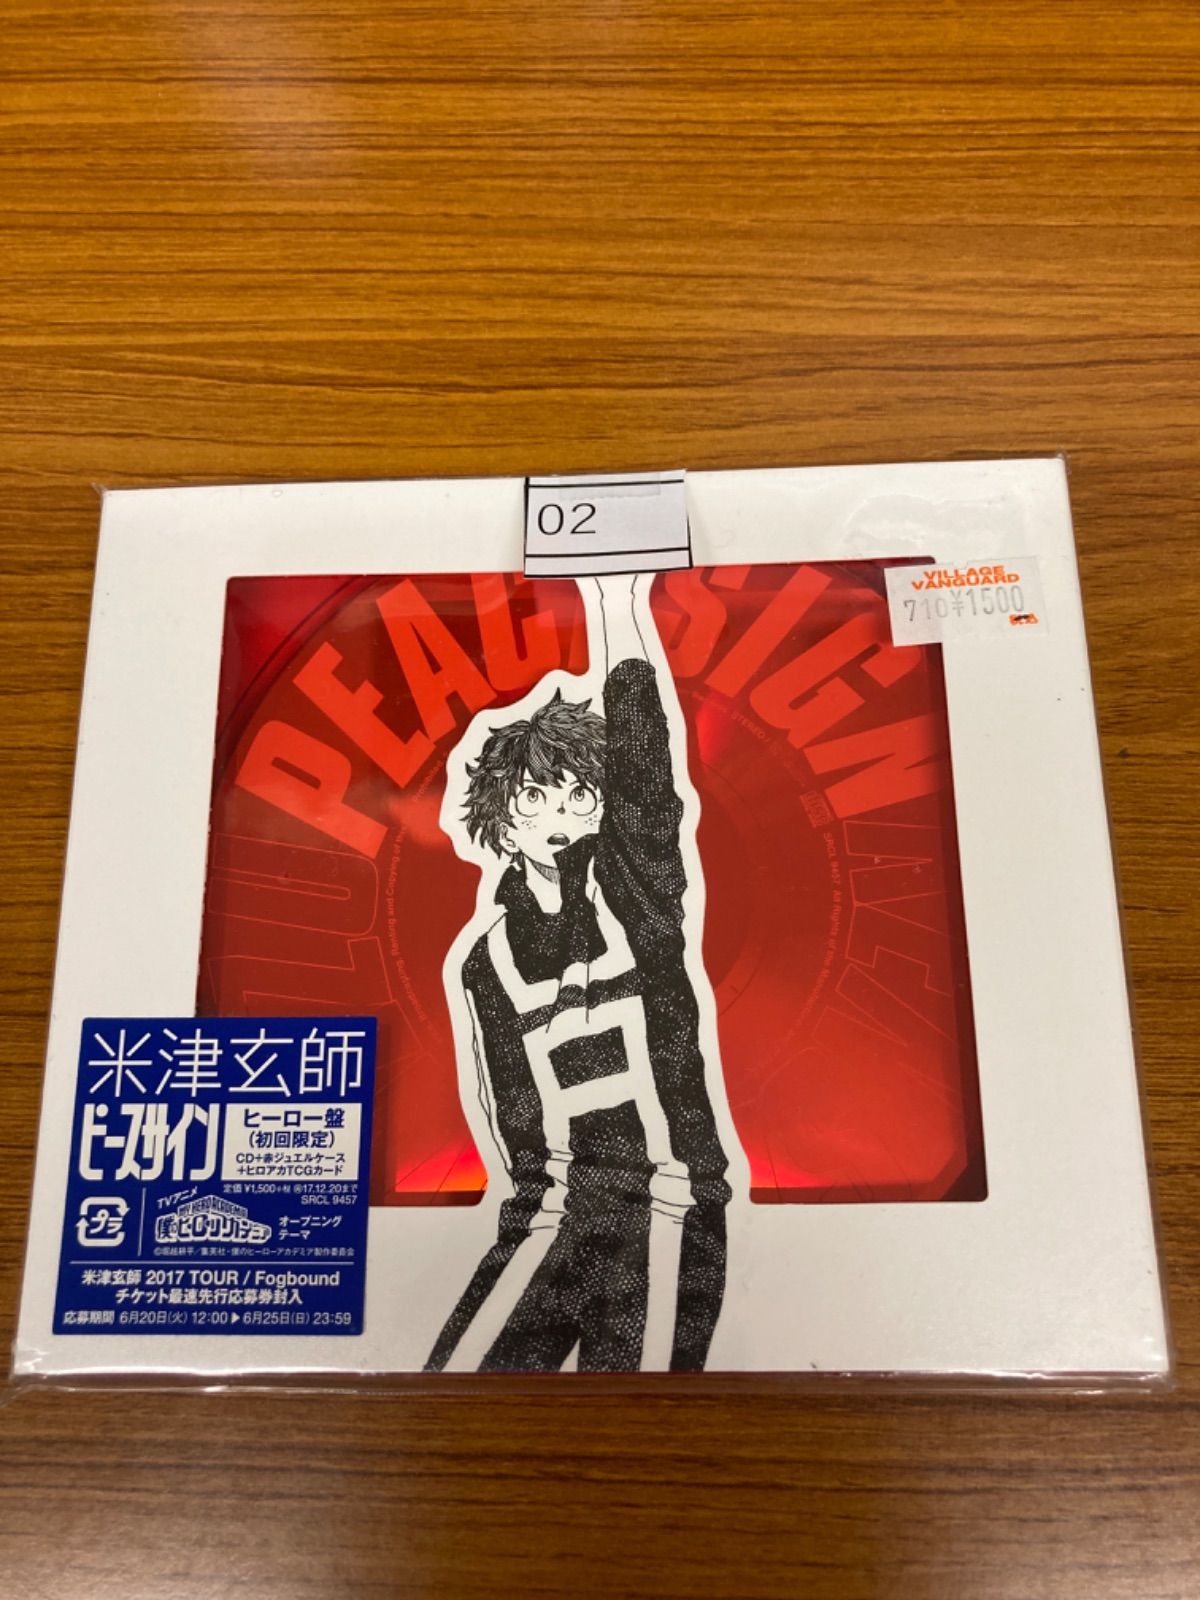 ピースサイン(ヒーロー盤 初回限定)(CD+赤ジュエルケース+ヒロアカTCG 